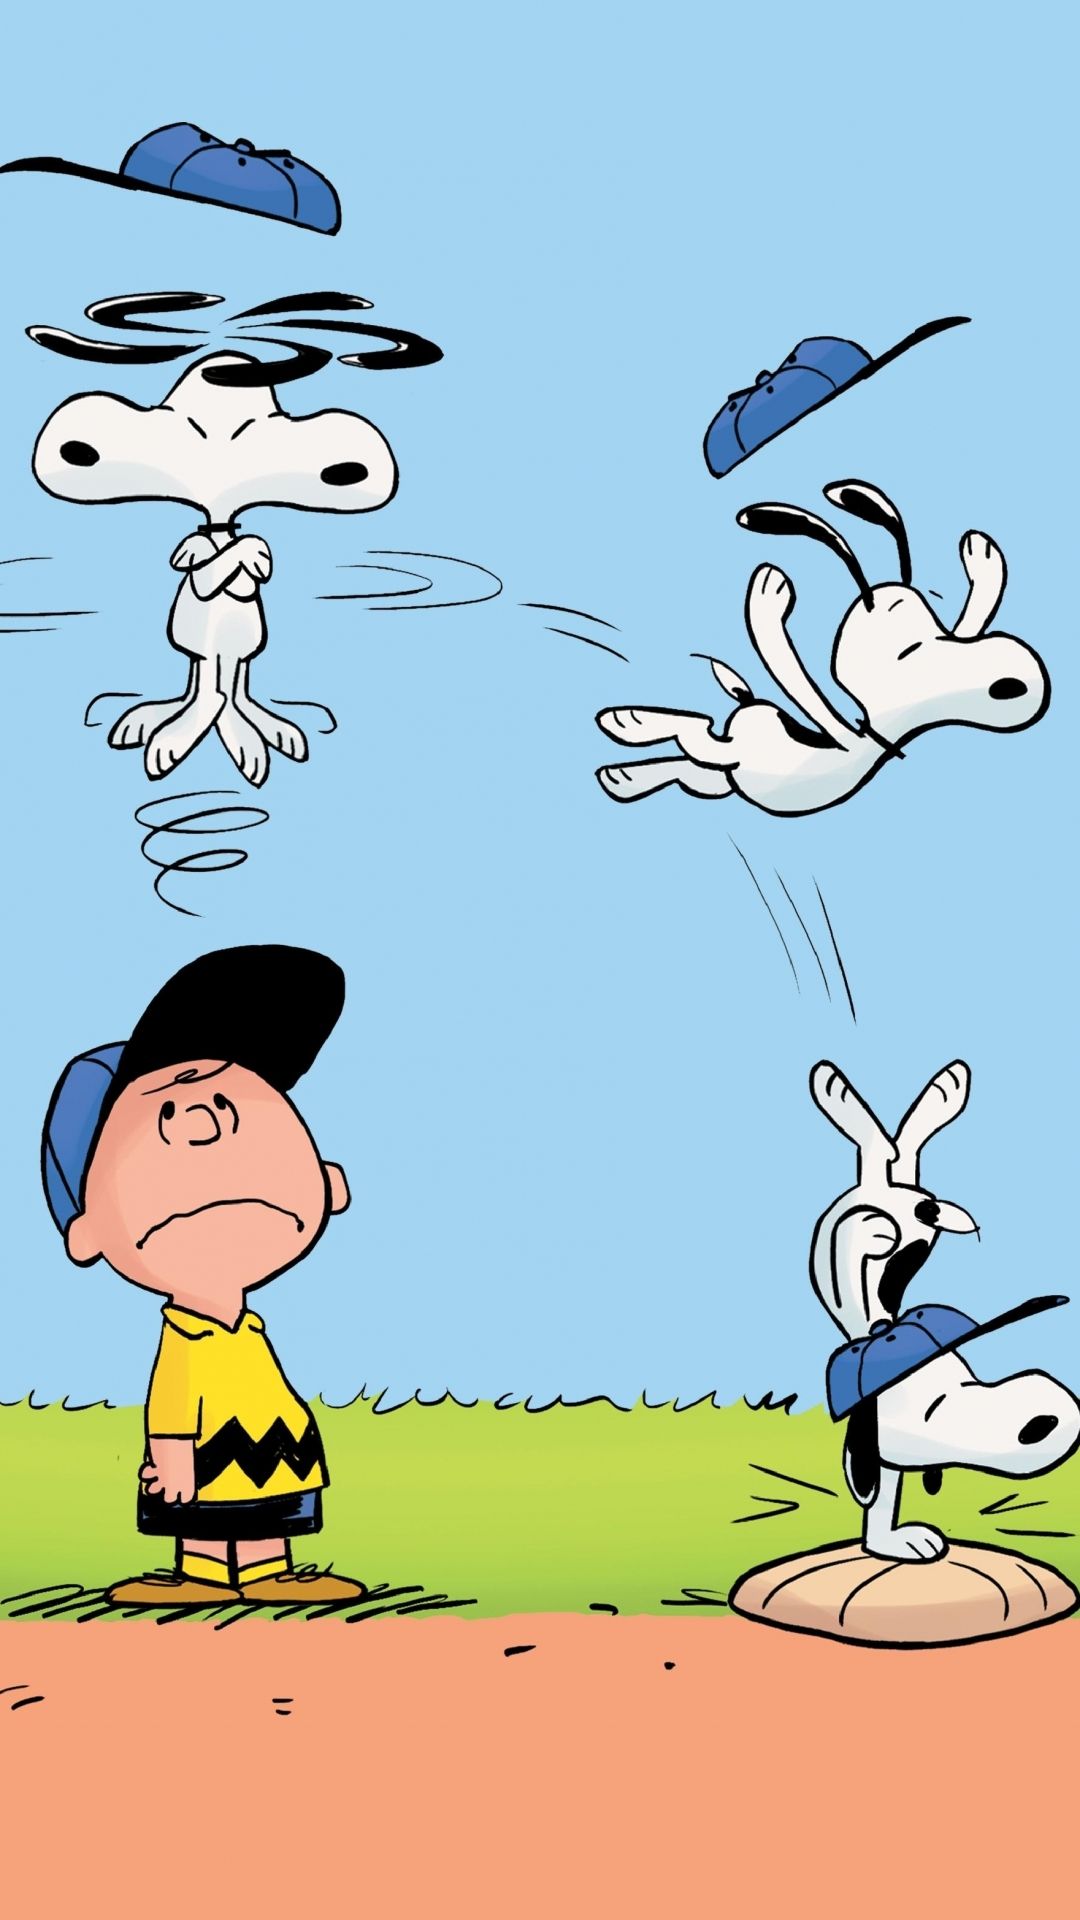 iPhone 6 - Cartoon/The Peanuts - Wallpaper ID: 589635